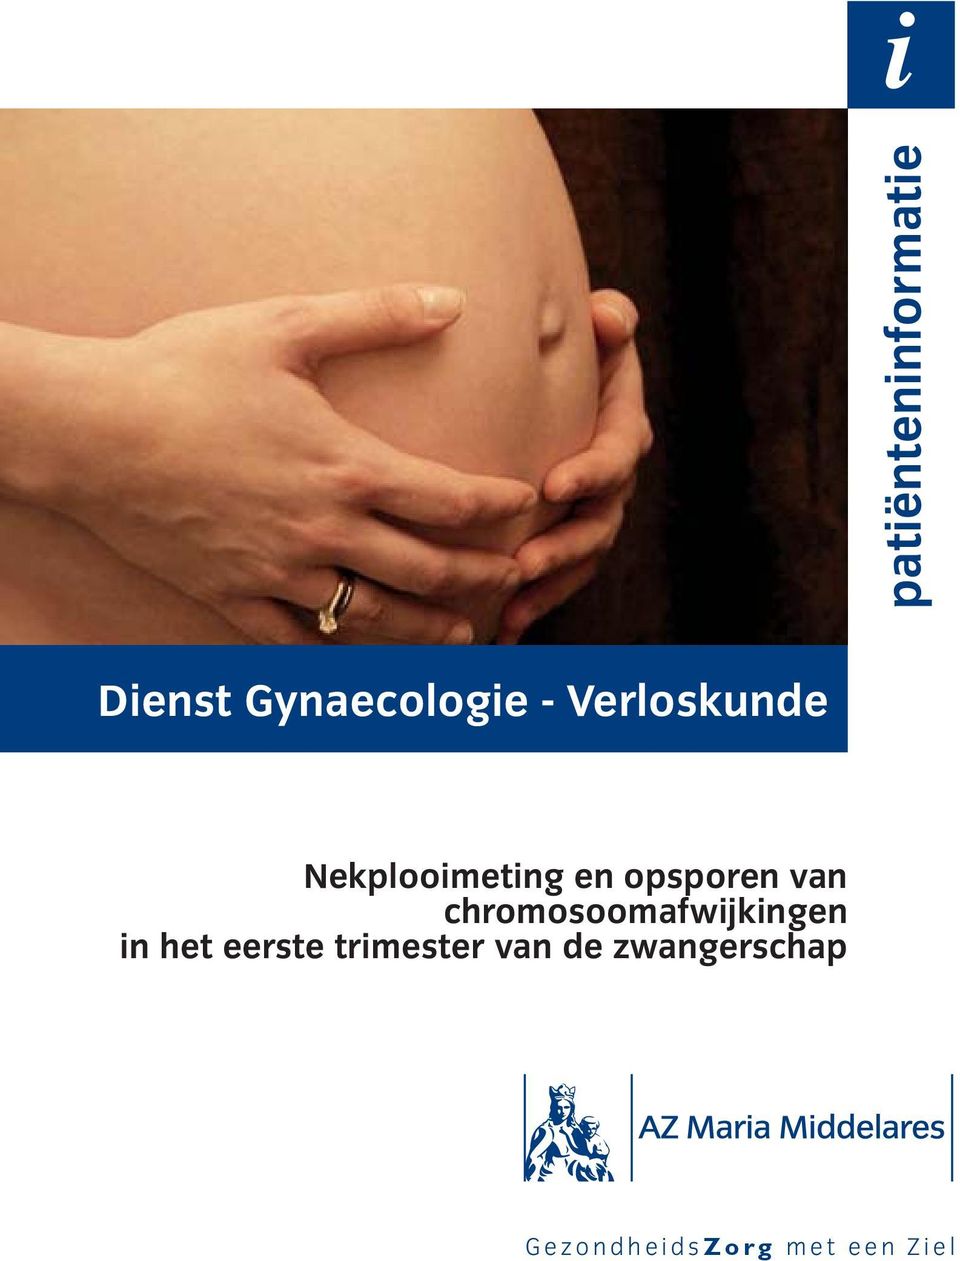 chromosoomafwijkingen in het eerste trimester